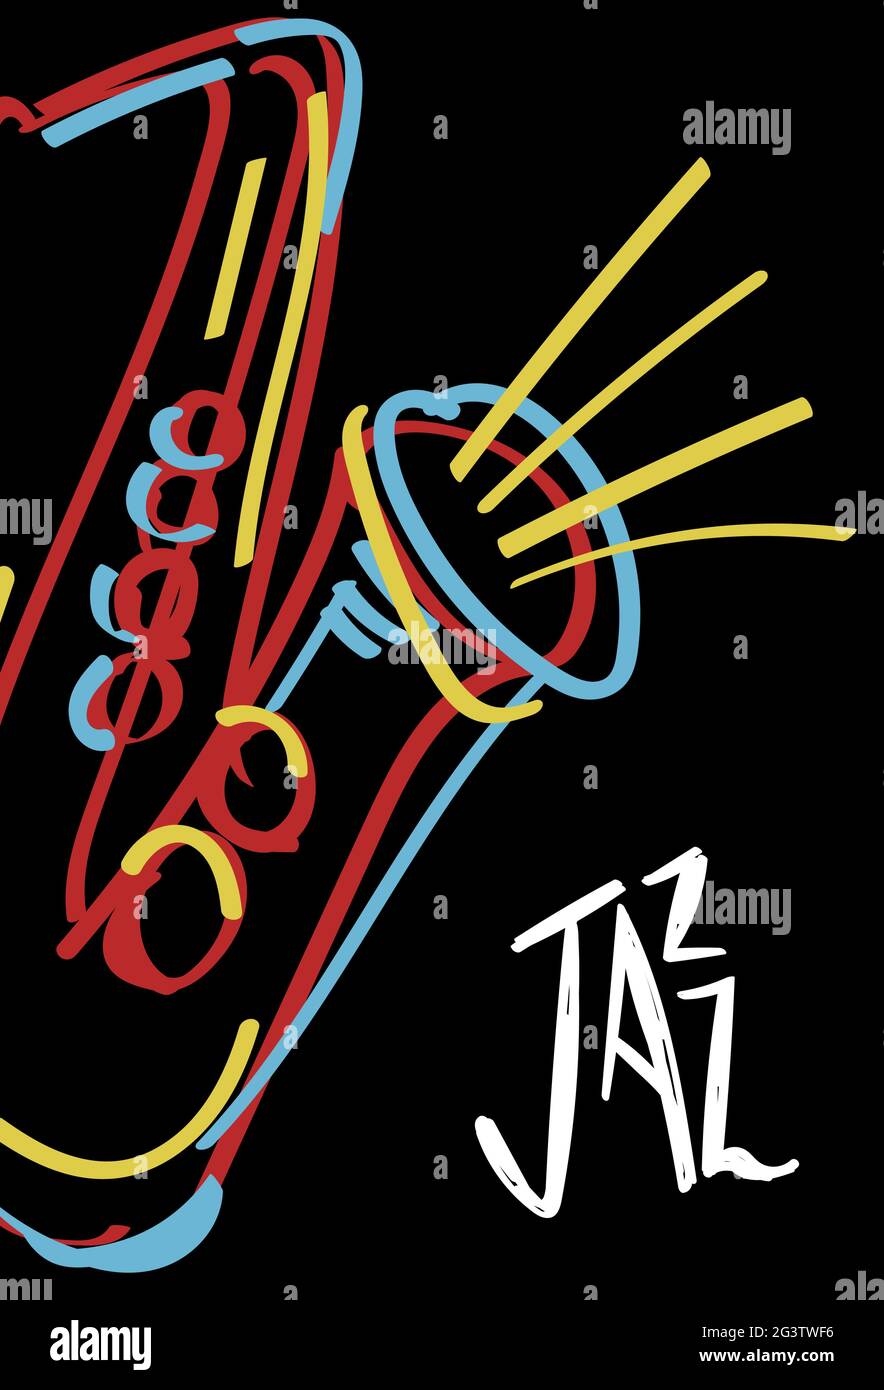 Musica jazz poster illustrazione di colorato sassofono astratto strumento doodle disegnato a mano. Modello di concerto musicale per night club o festival Illustrazione Vettoriale